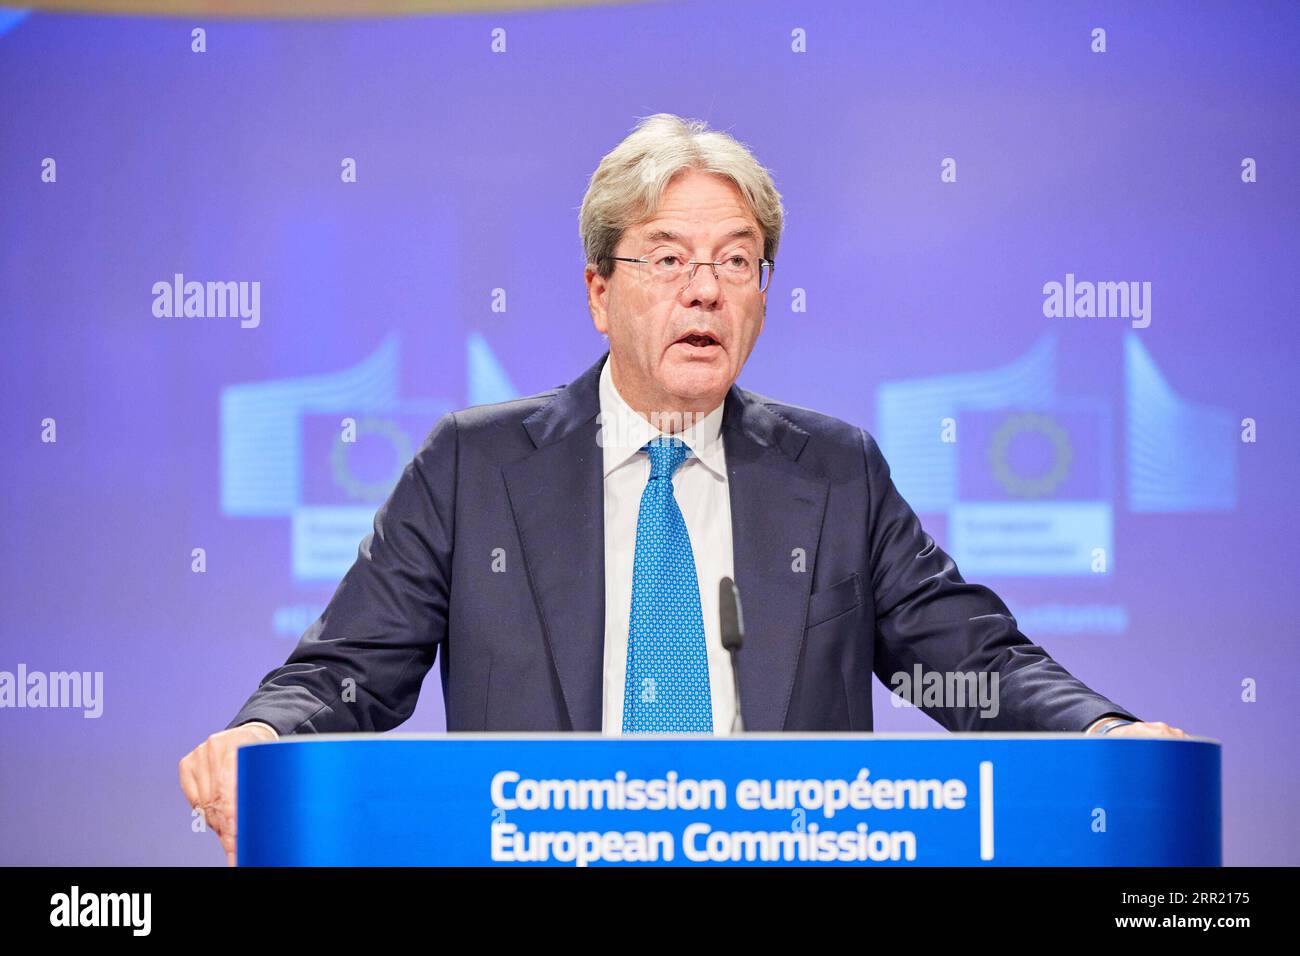 200928 -- BRÜSSEL, 28. September 2020 -- der EU-Wirtschaftskommissar Paolo Gentiloni legt auf einer Pressekonferenz am 28. September 2020 in Brüssel (Belgien) einen neuen Aktionsplan für die Zollunion vor. Die EU hat am Montag einen neuen Aktionsplan für die Zollunion auf den Weg gebracht, der darauf abzielt, die Zollverfahren an den EU-Grenzen zu modernisieren und zu vereinfachen und gleichzeitig Betrug im Zusammenhang mit Zoll und Mehrwertsteuer zu bekämpfen. /Handout über Xinhua BELGIUM-BRUSSELS-EU-CUSTOMS-ACTION PLAN EuropeanxUnion PUBLICATIONxNOTxINxCHN Stockfoto